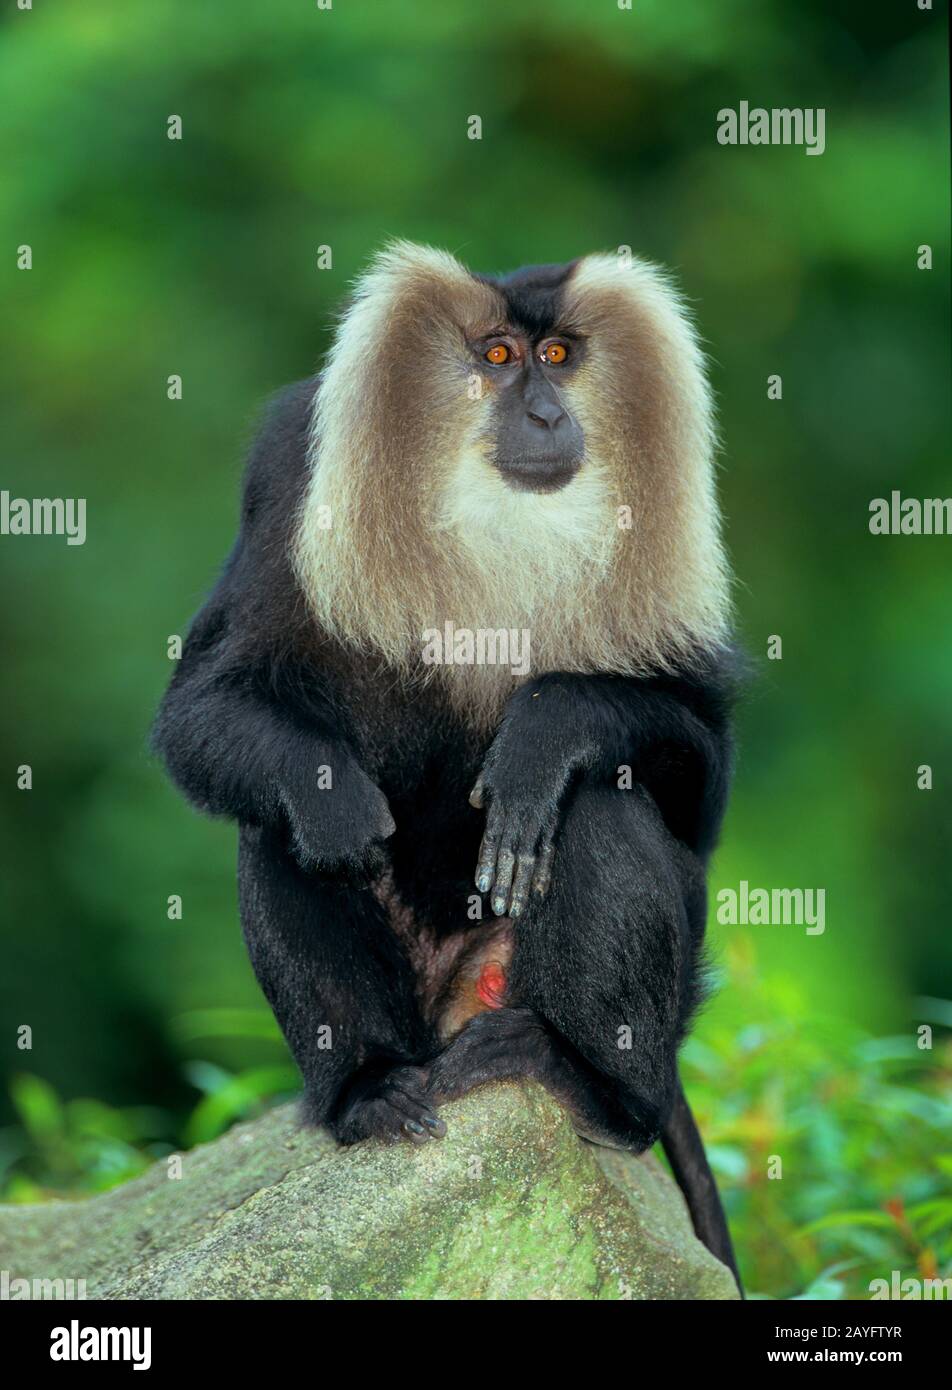 Macaco de cola lionta, macaco de cola de león (Macaca silenus), sentado en una roca Foto de stock